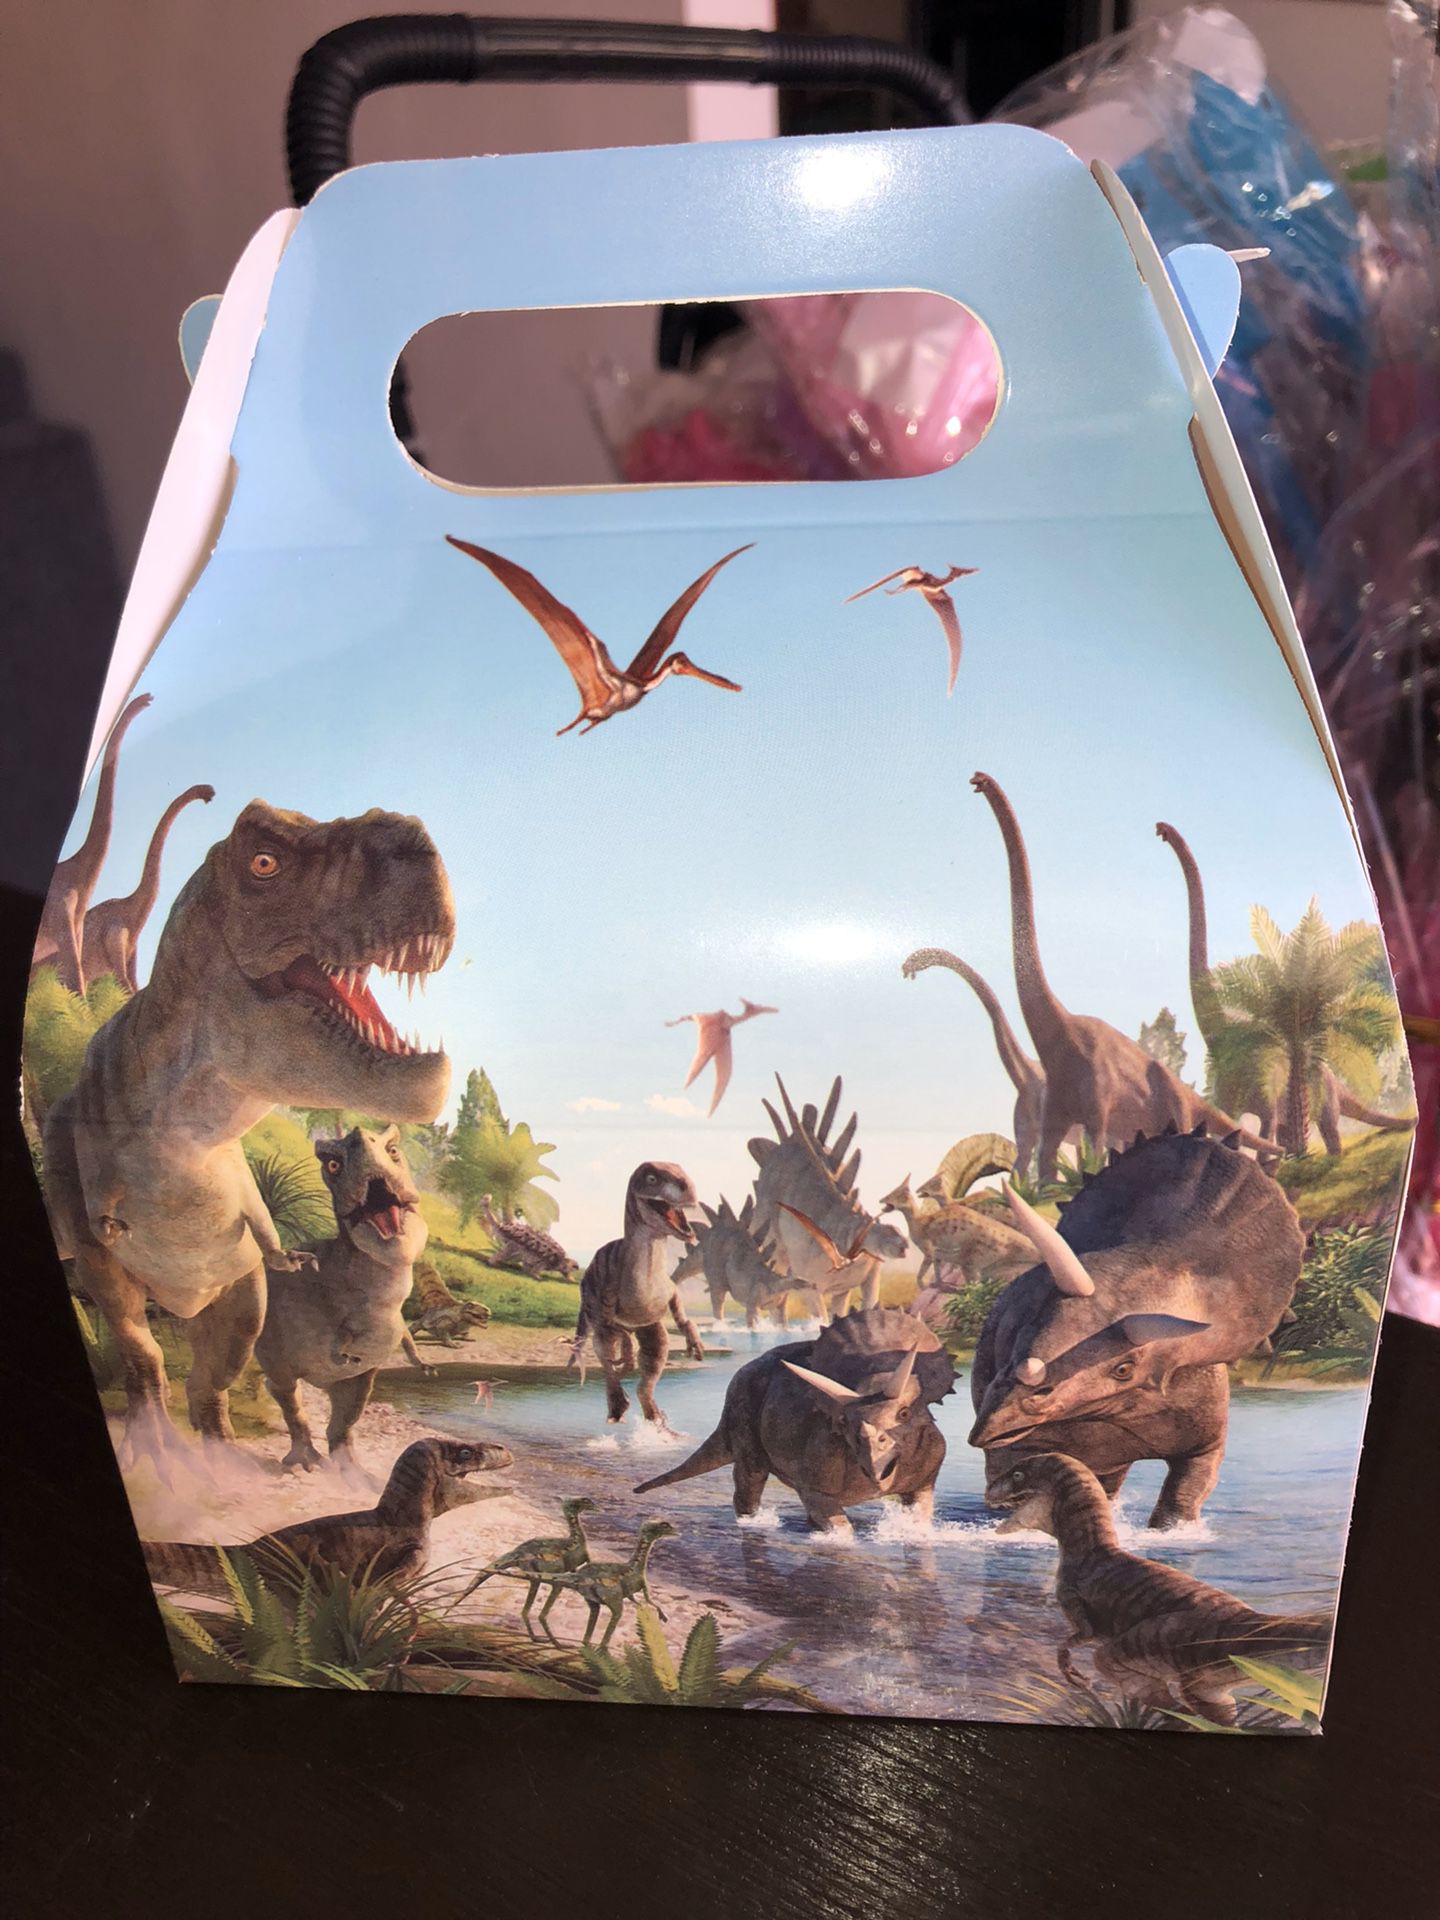 Dinosaur boxes $10 a doz